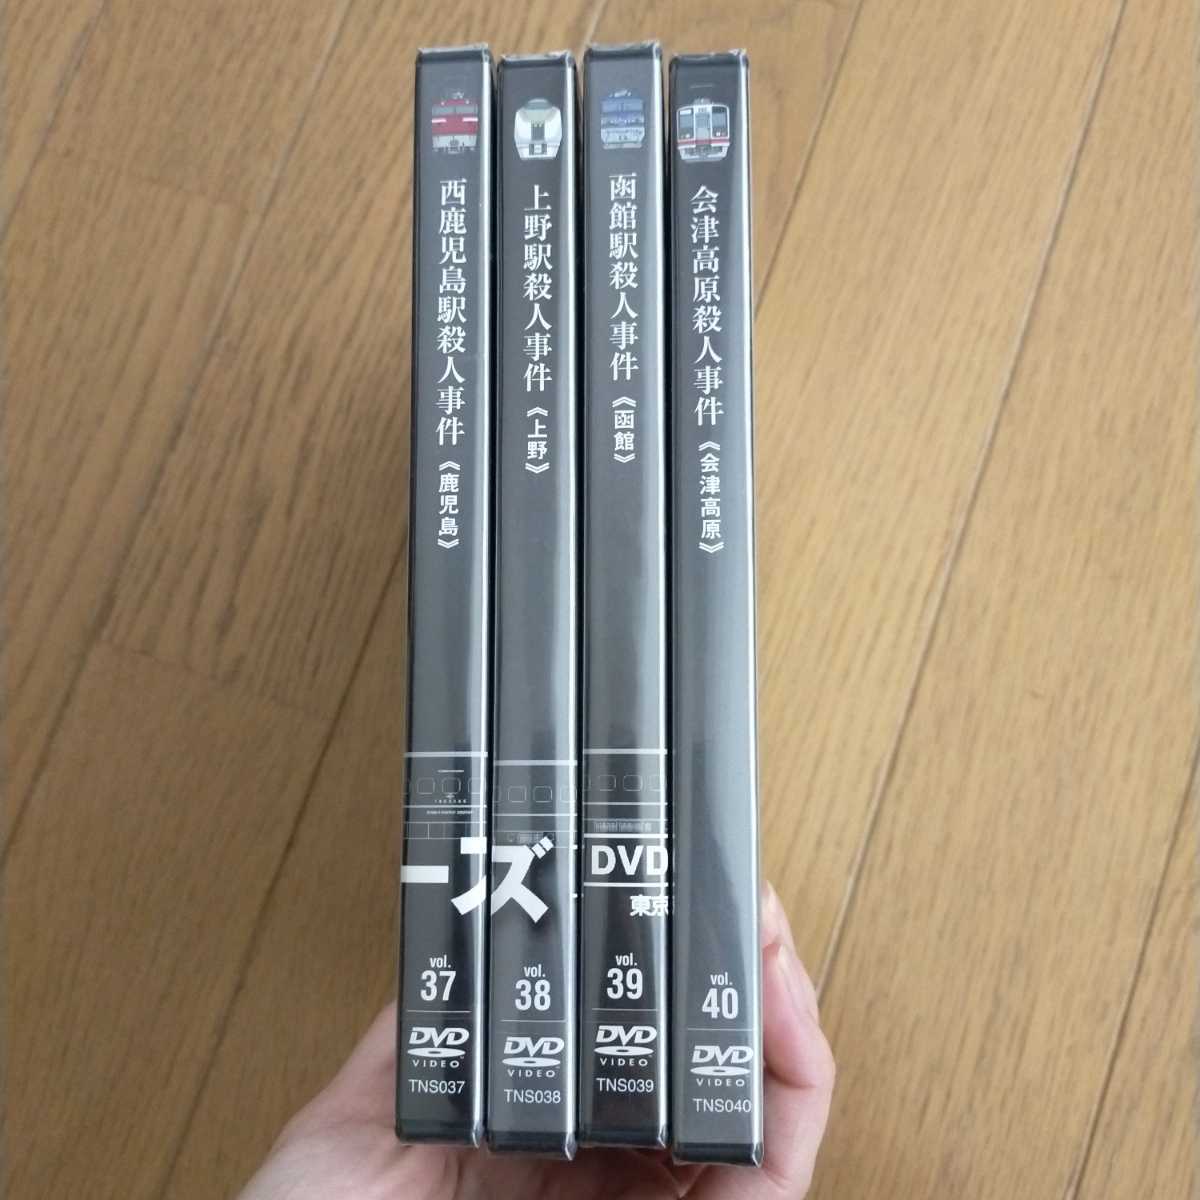 西村京太郎サスペンス 十津川警部シリーズ DVD コレクション vol.5~8